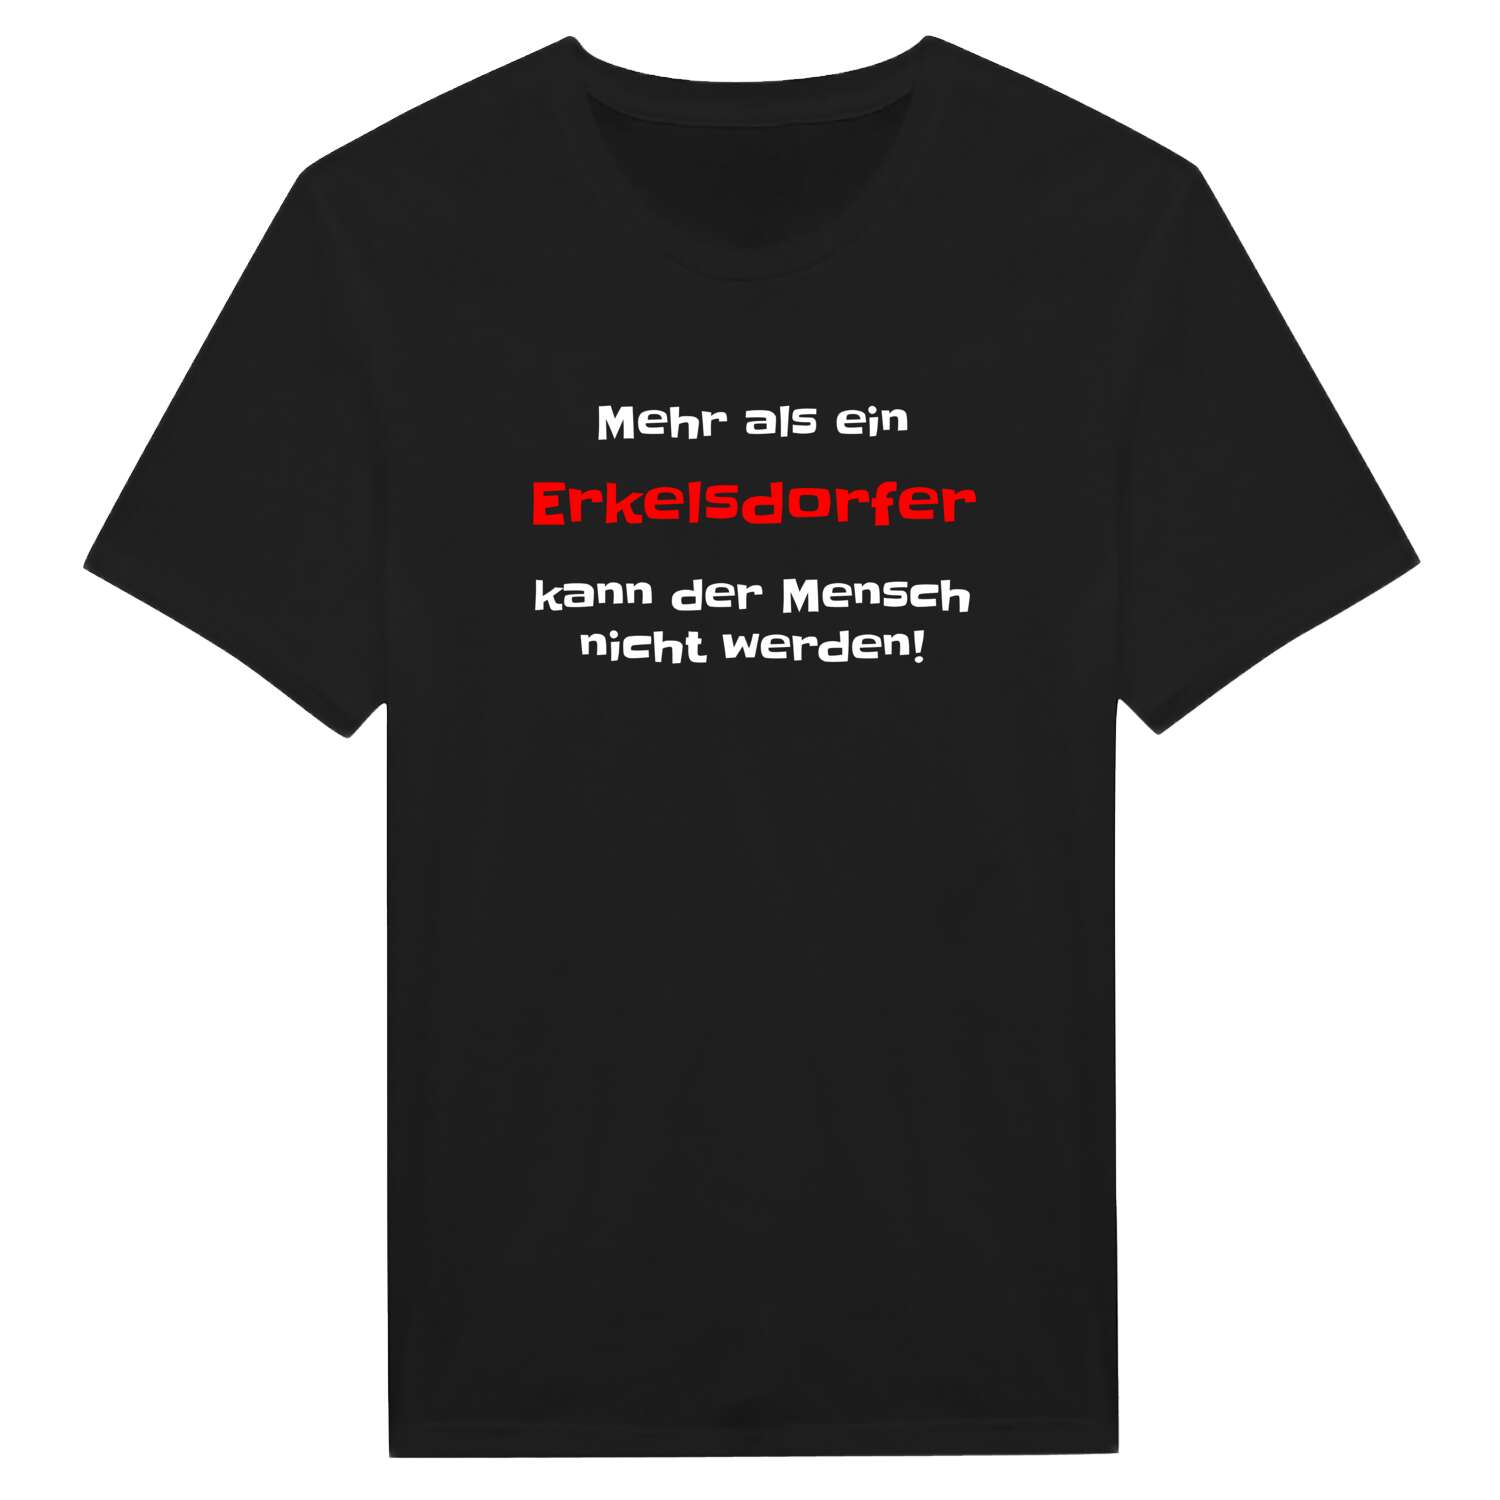 Erkelsdorf T-Shirt »Mehr als ein«